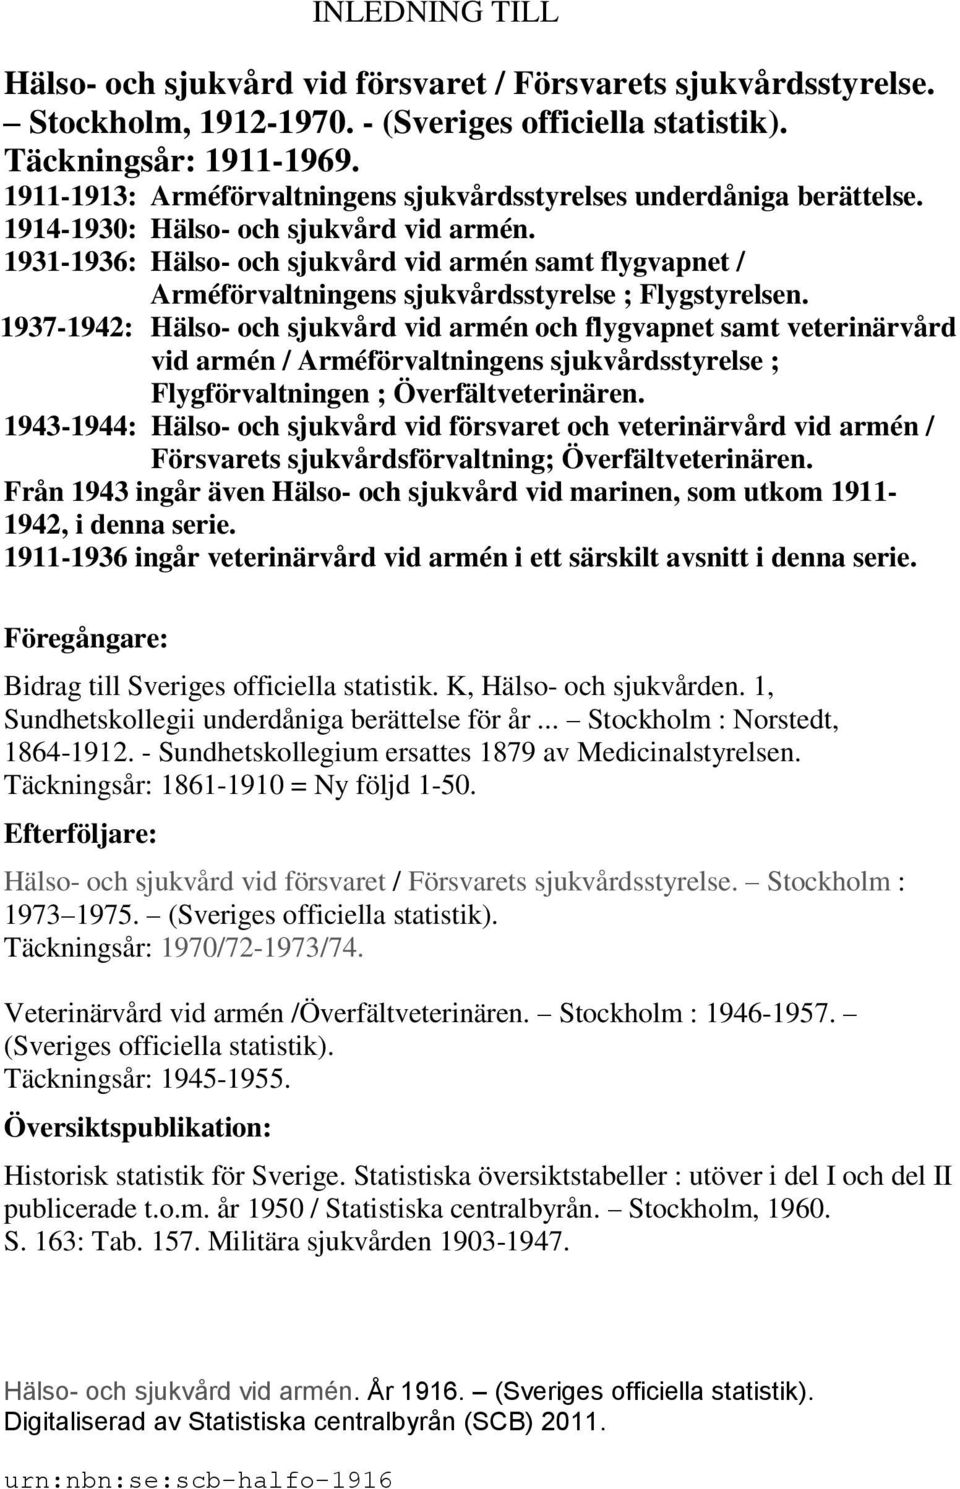 1931-1936: Hälso- och sjukvård vid armén samt flygvapnet / Arméförvaltningens sjukvårdsstyrelse ; Flygstyrelsen.